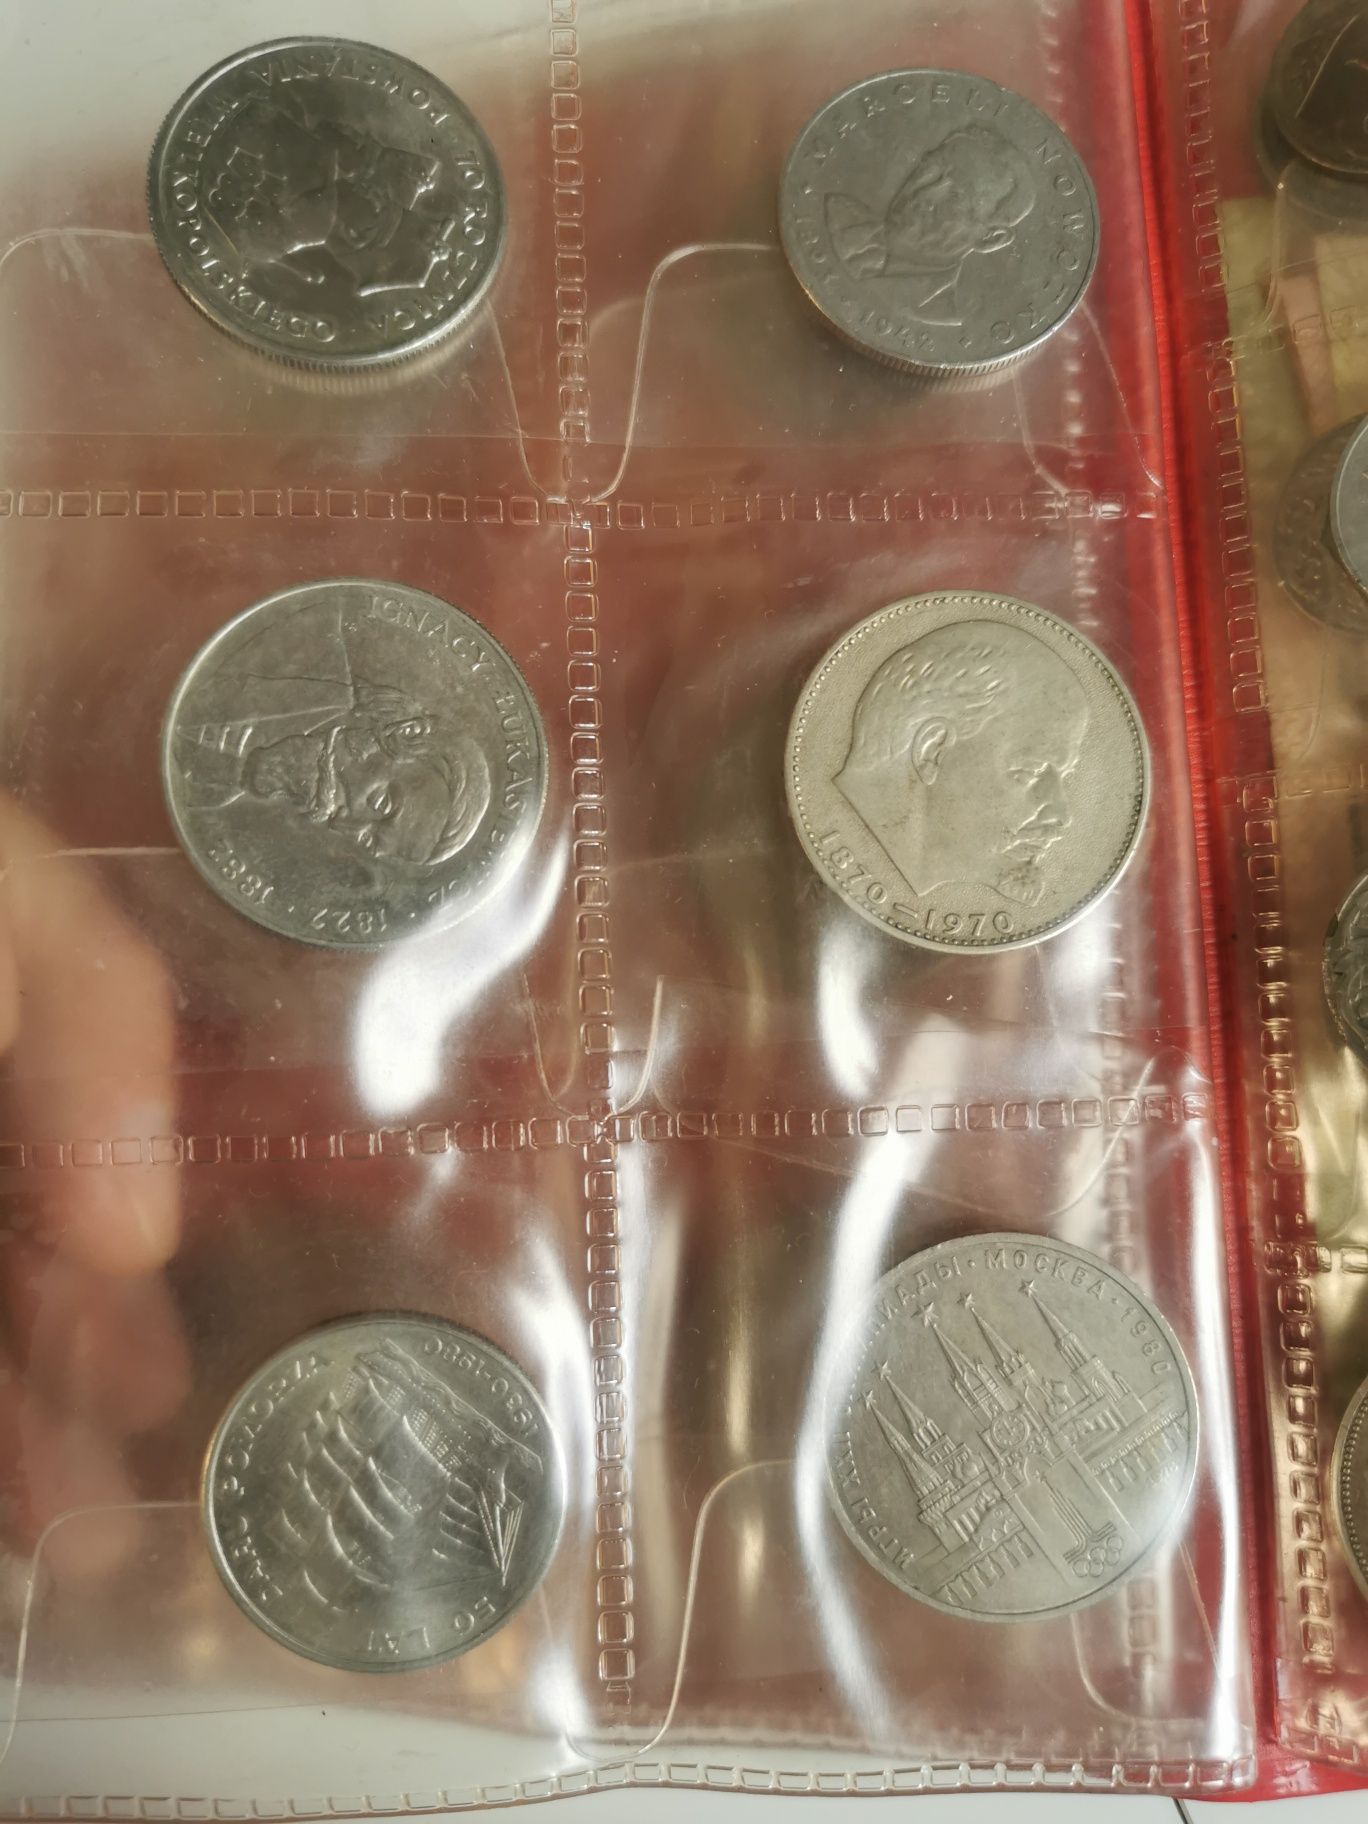 Moneta 50 100 zł 1990r. z koroną + monety dwa klasery od kolekcjonera